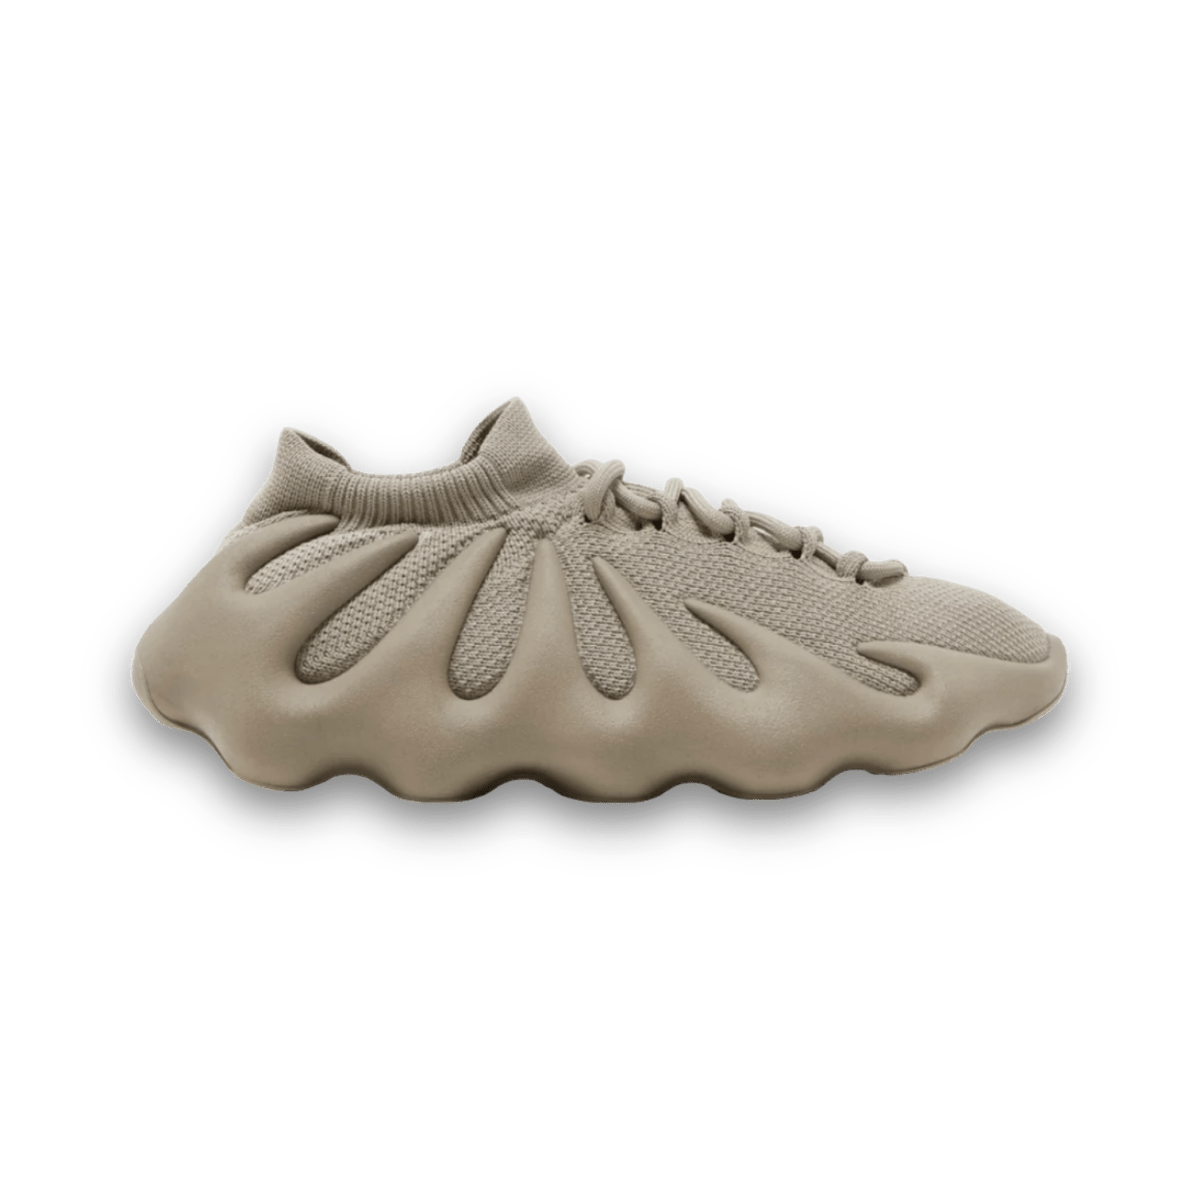 Yeezy 450 'Stone Flax' - Low Sneaker - Jawns on Fire Sneakers & Streetwear